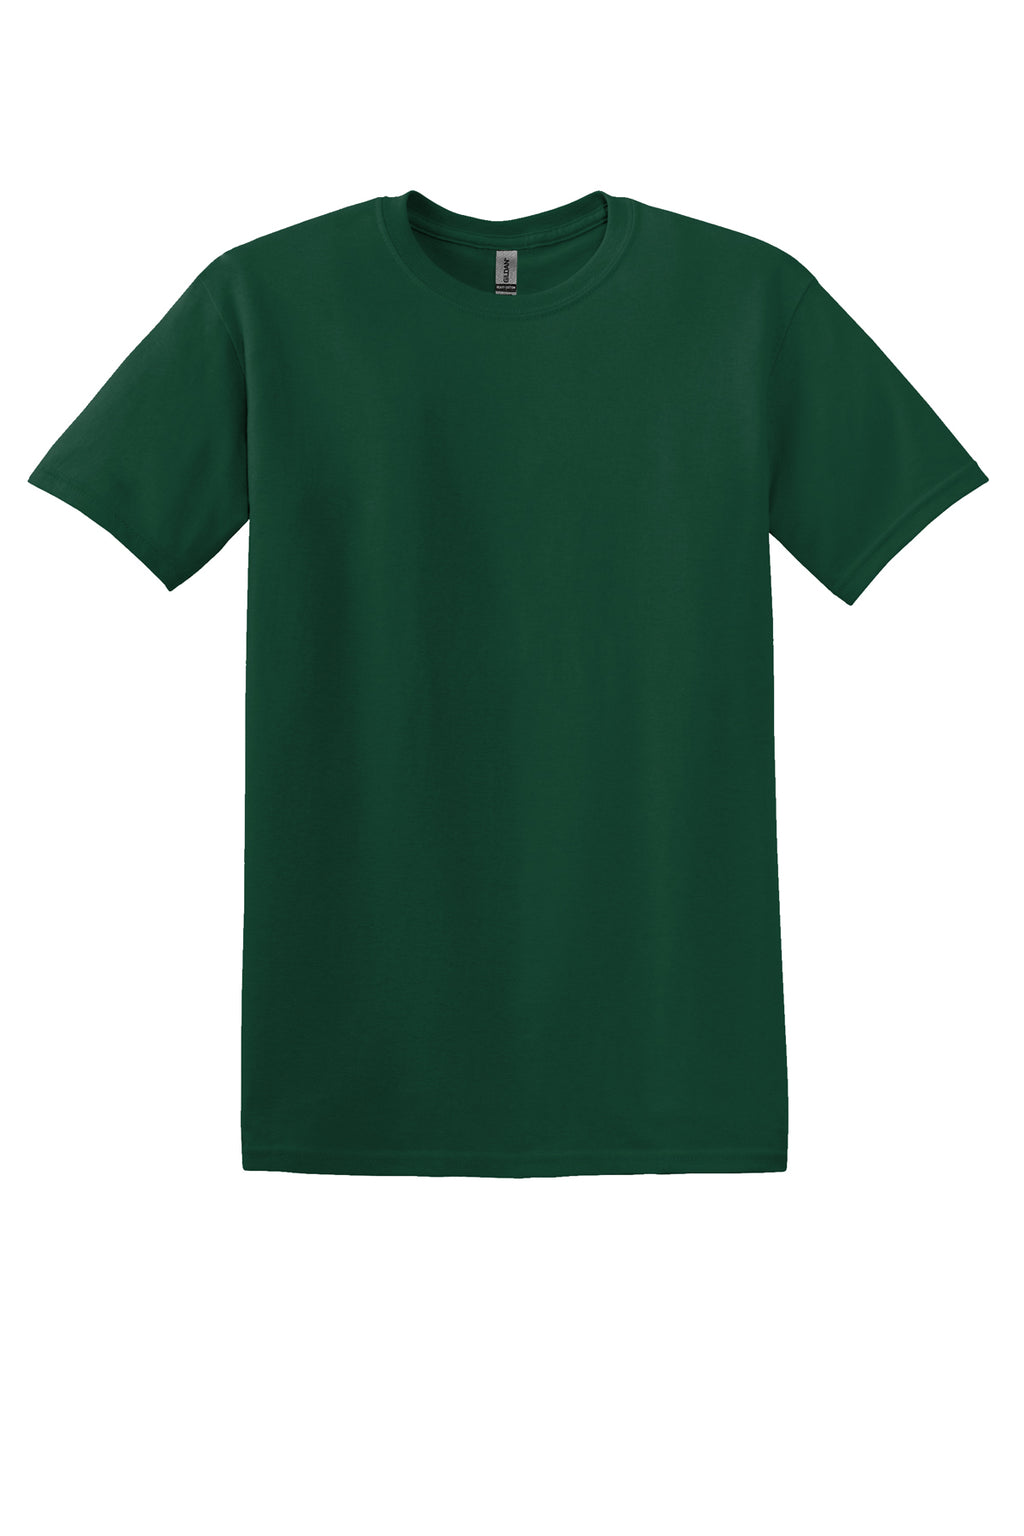 Gildan Mens/Unisex S/S Shirts Forest Green